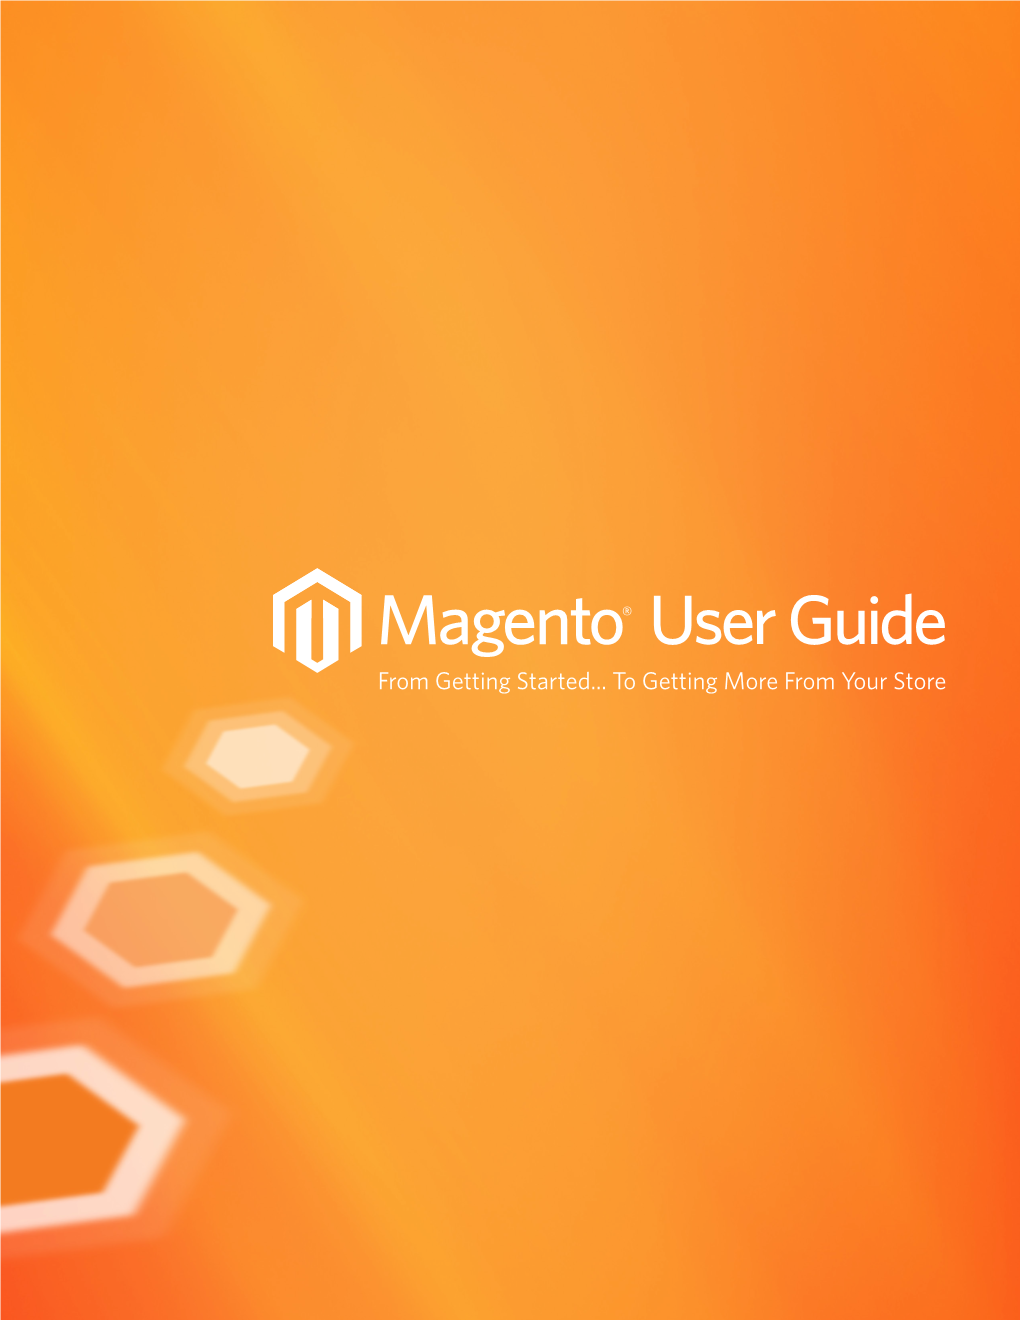 Magento User Guide